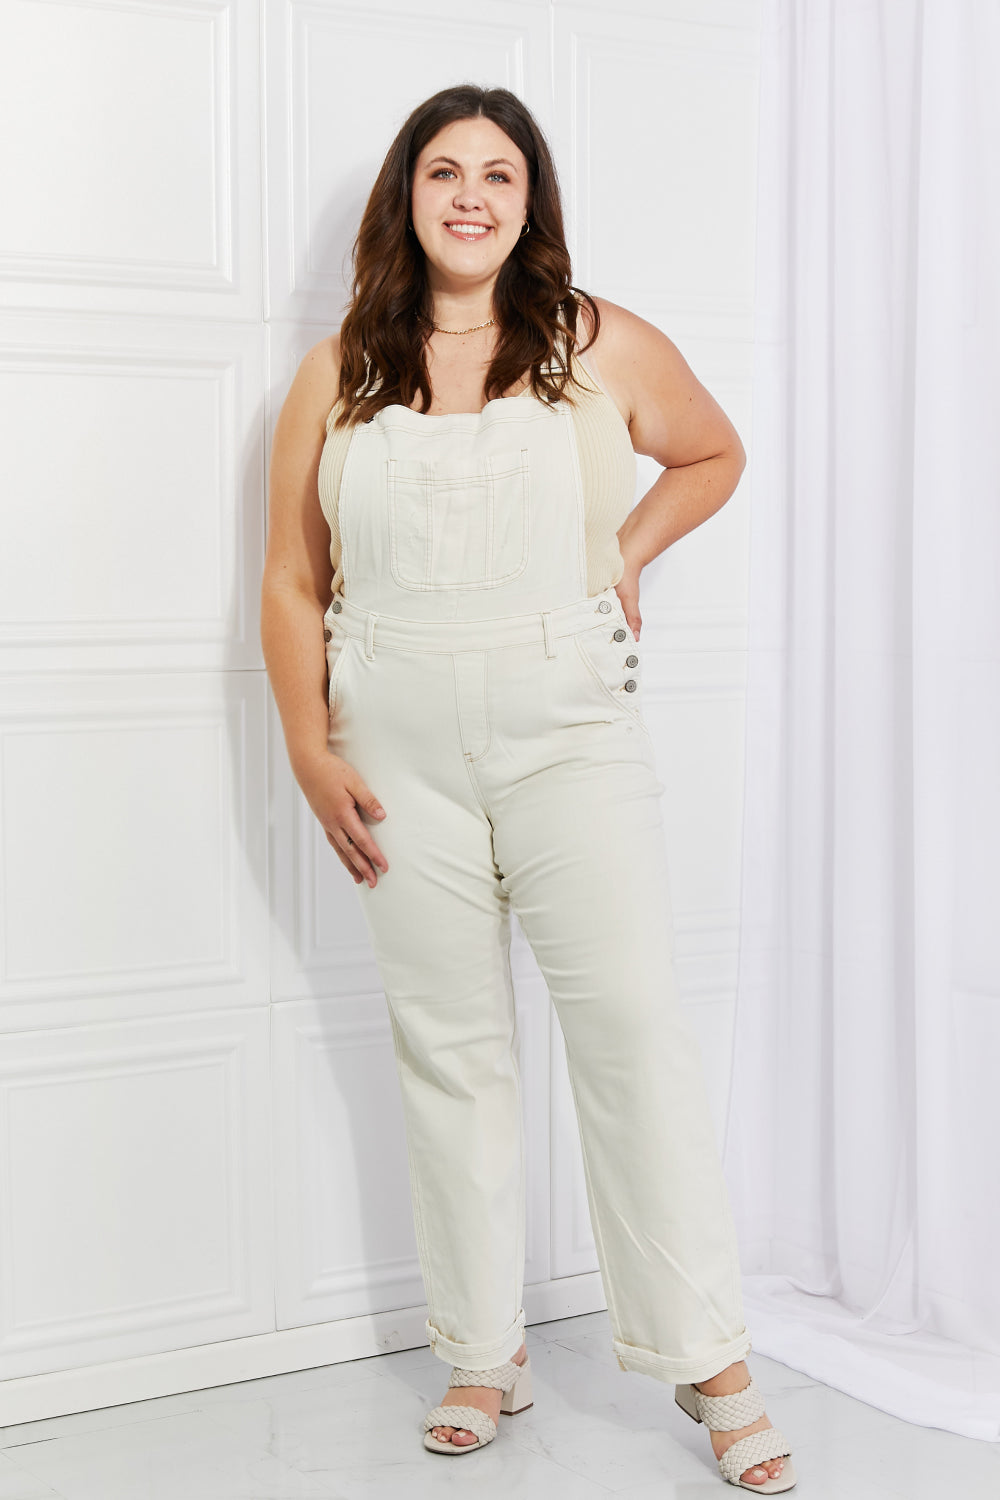 Women's White High Waist Denim Overalls - Tigbul's Fashion